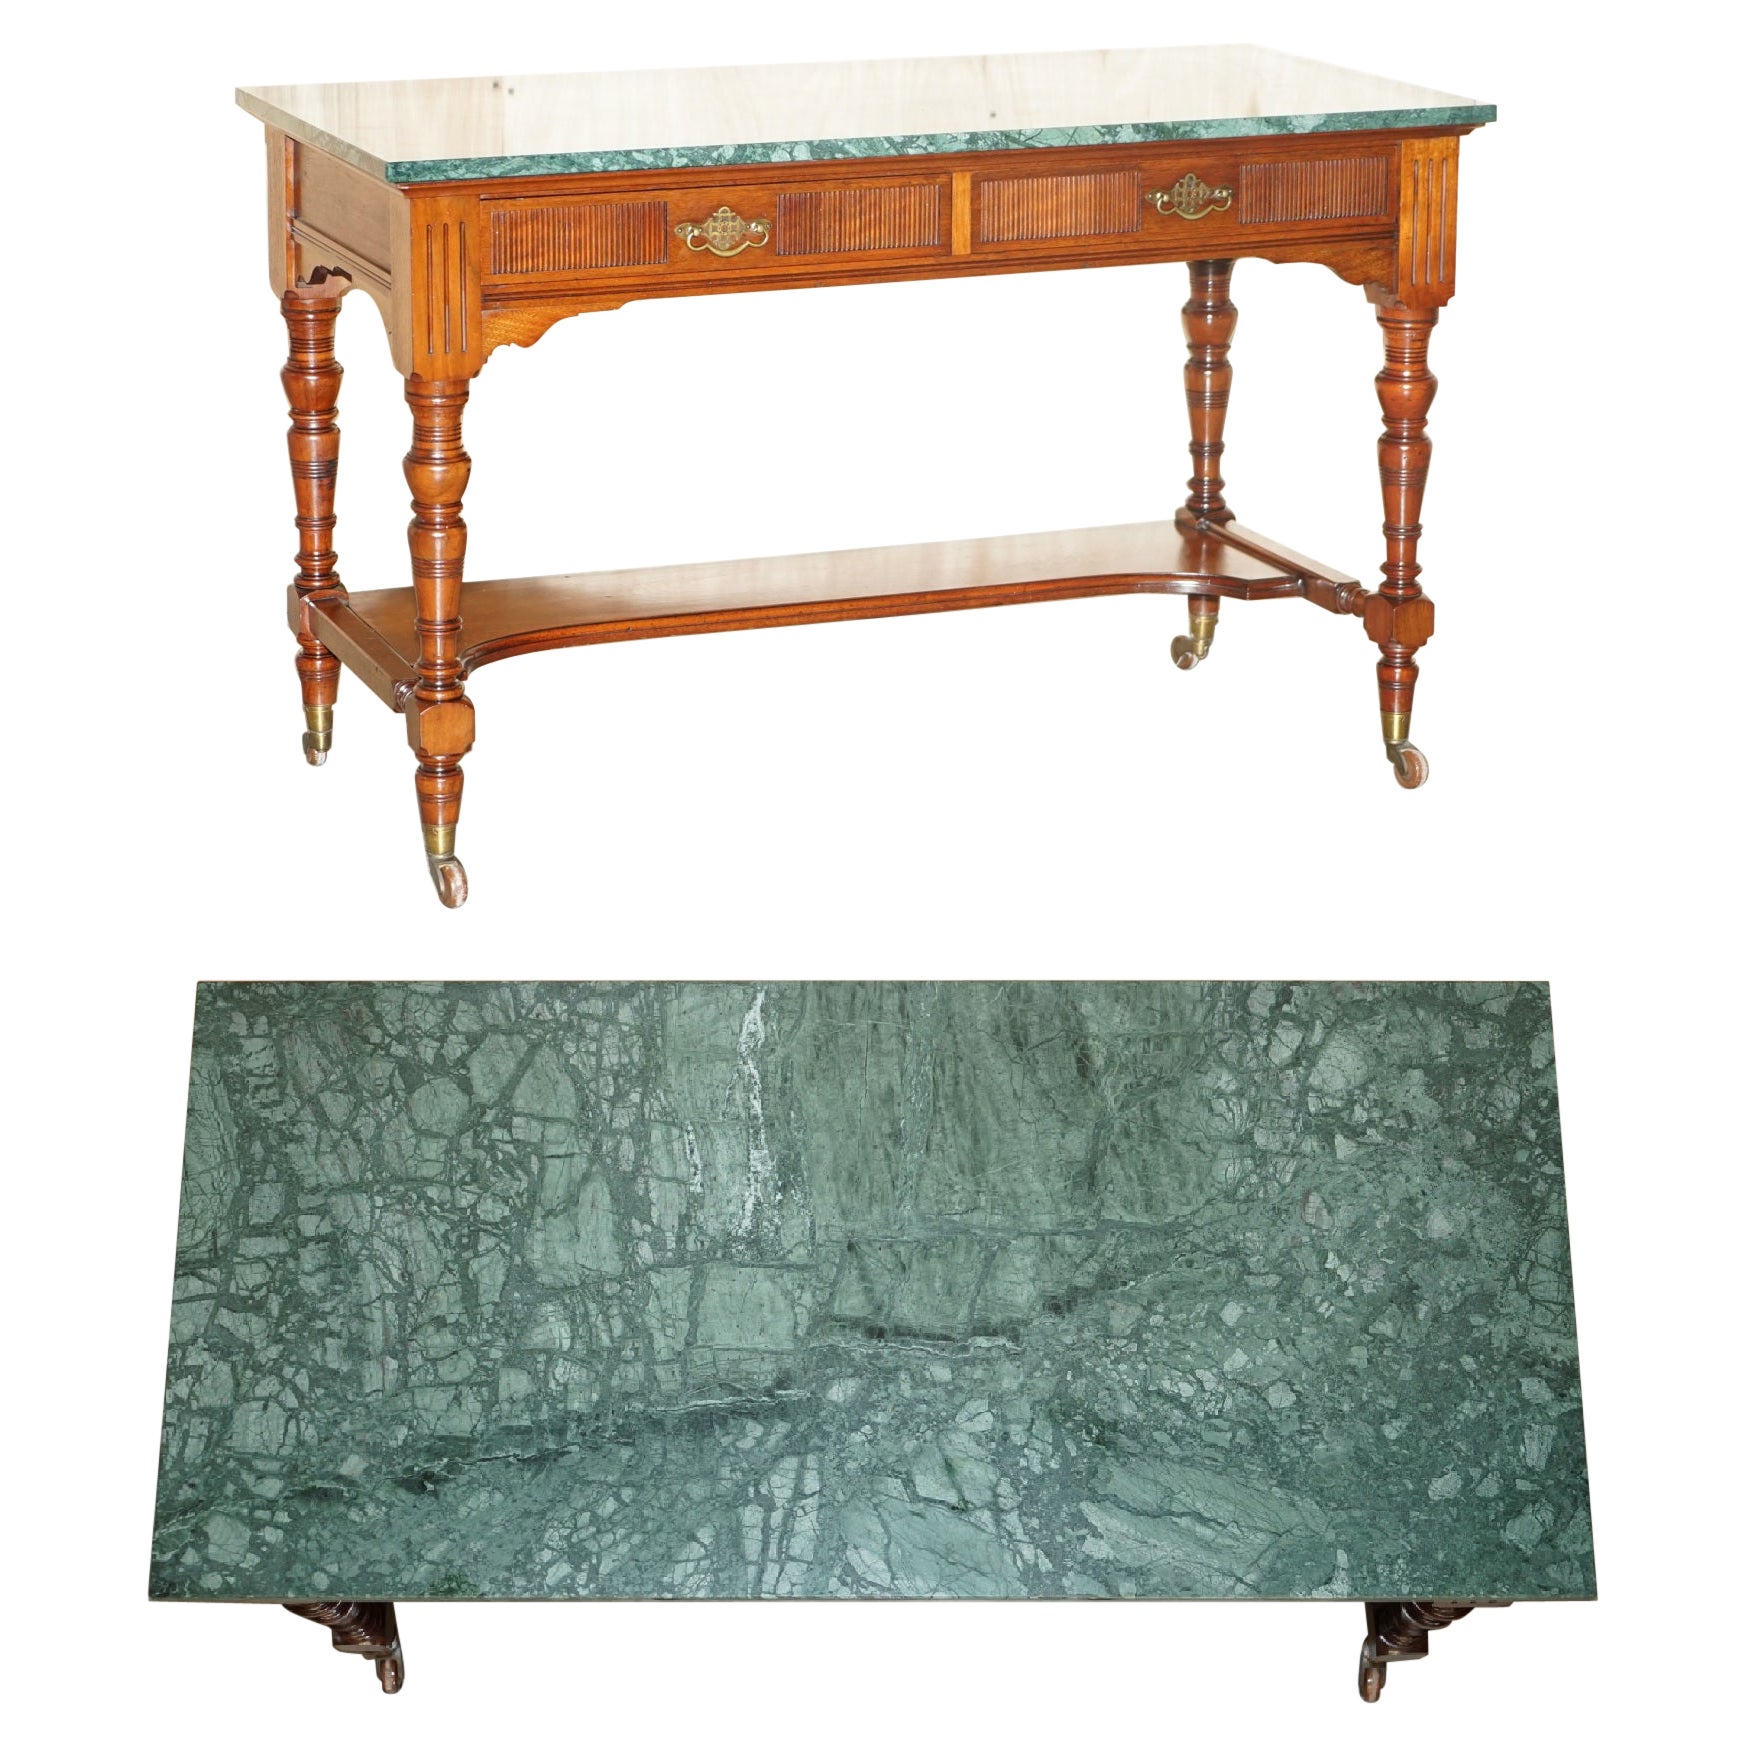 Feiner viktorianischer Jas Shoolbred Green Marmor-Schreibtisch mit Uhrmachern-Schreibtisch